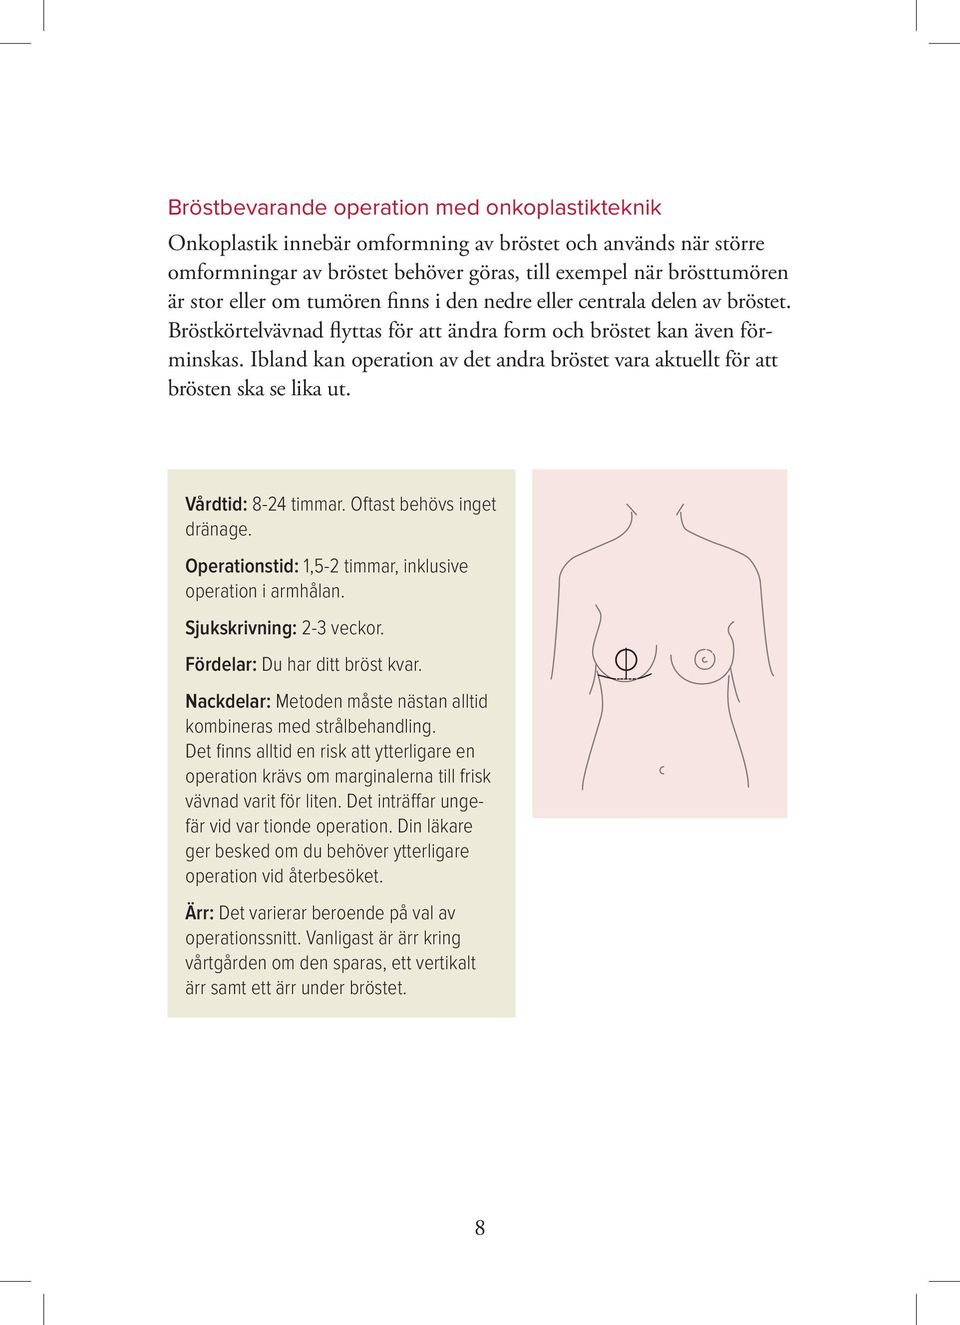 Ibland kan operation av det andra bröstet vara aktuellt för att brösten ska se lika ut. Vårdtid: 8-24 timmar. Oftast behövs inget dränage. Operationstid: 1,5-2 timmar, inklusive operation i armhålan.